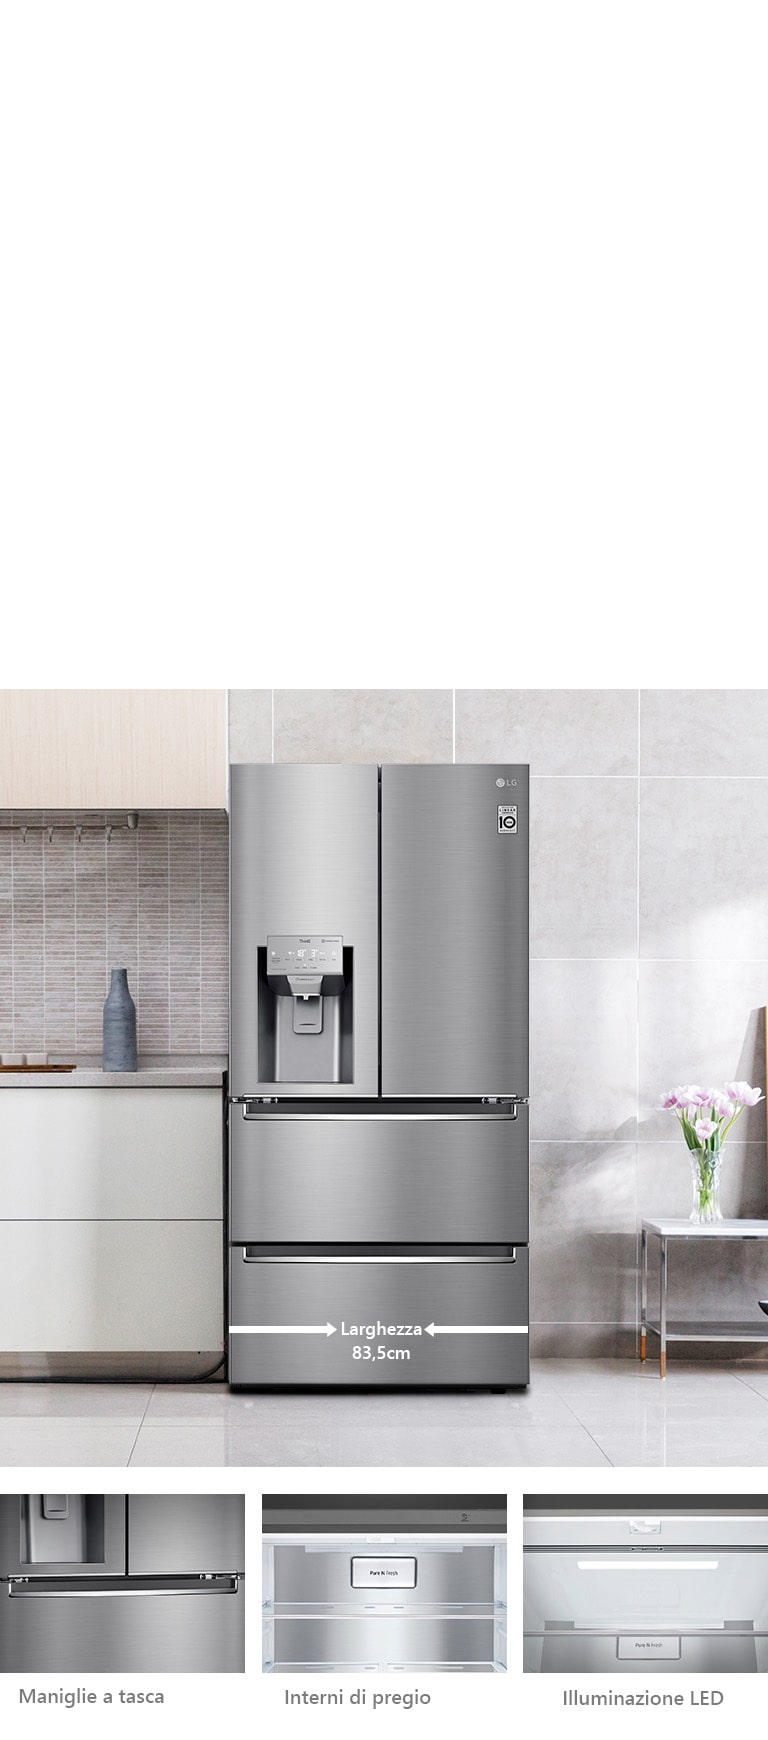 La prima immagine mostra il frigorifero installato in una cucina moderna. La seconda mostra un dettaglio delle maniglie a tasca. La terza mostra la finitura metallica interna. La quarta mostra l'illuminazione LED interna.